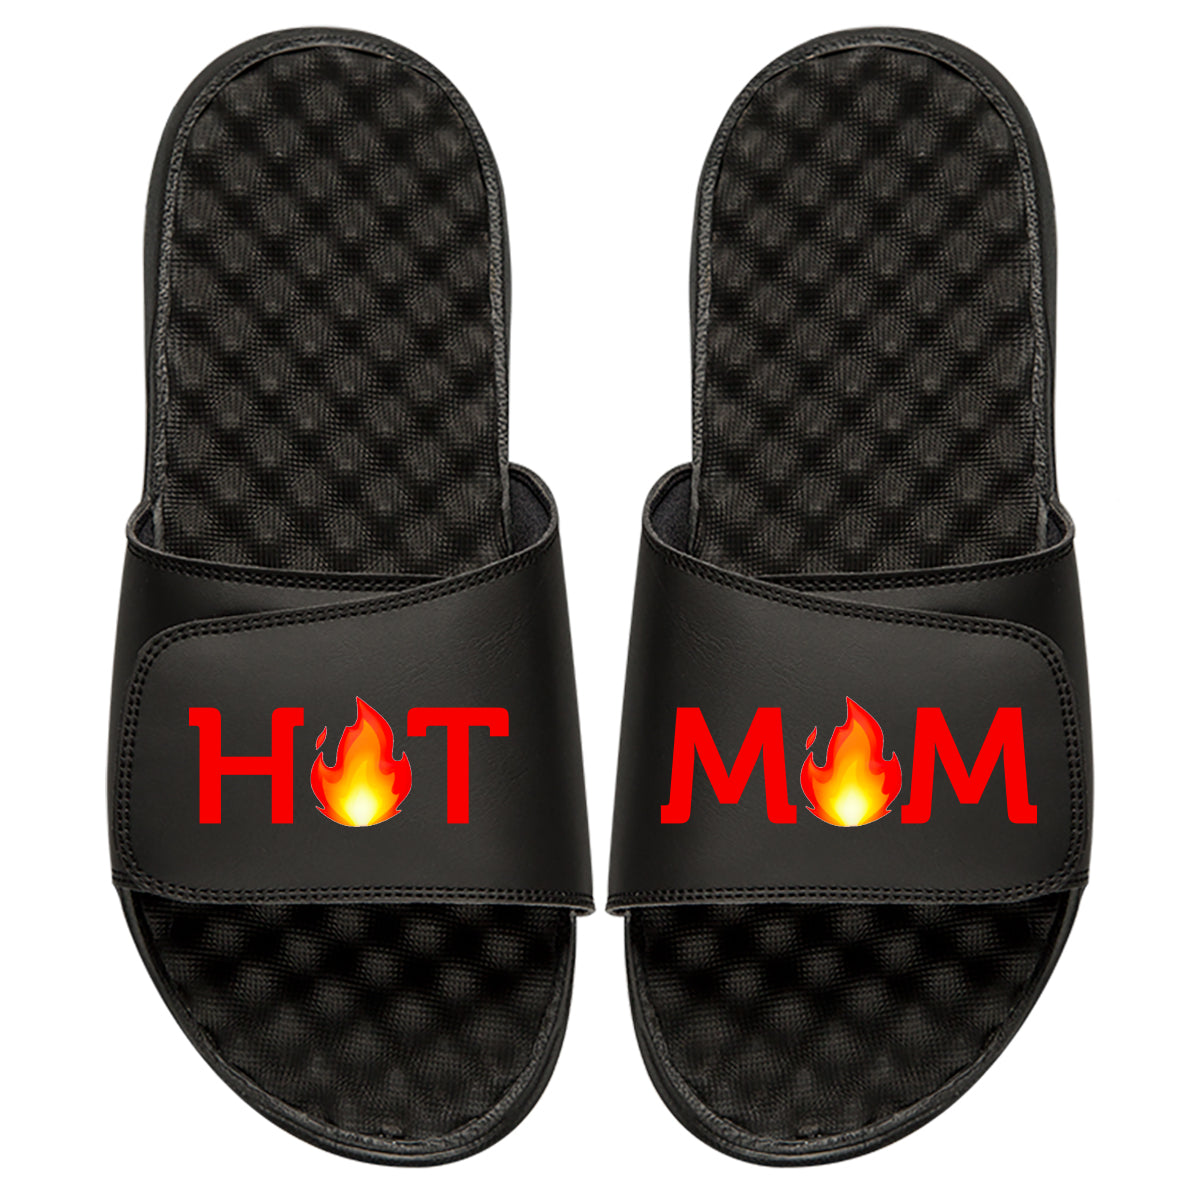 Hot Mom Slides